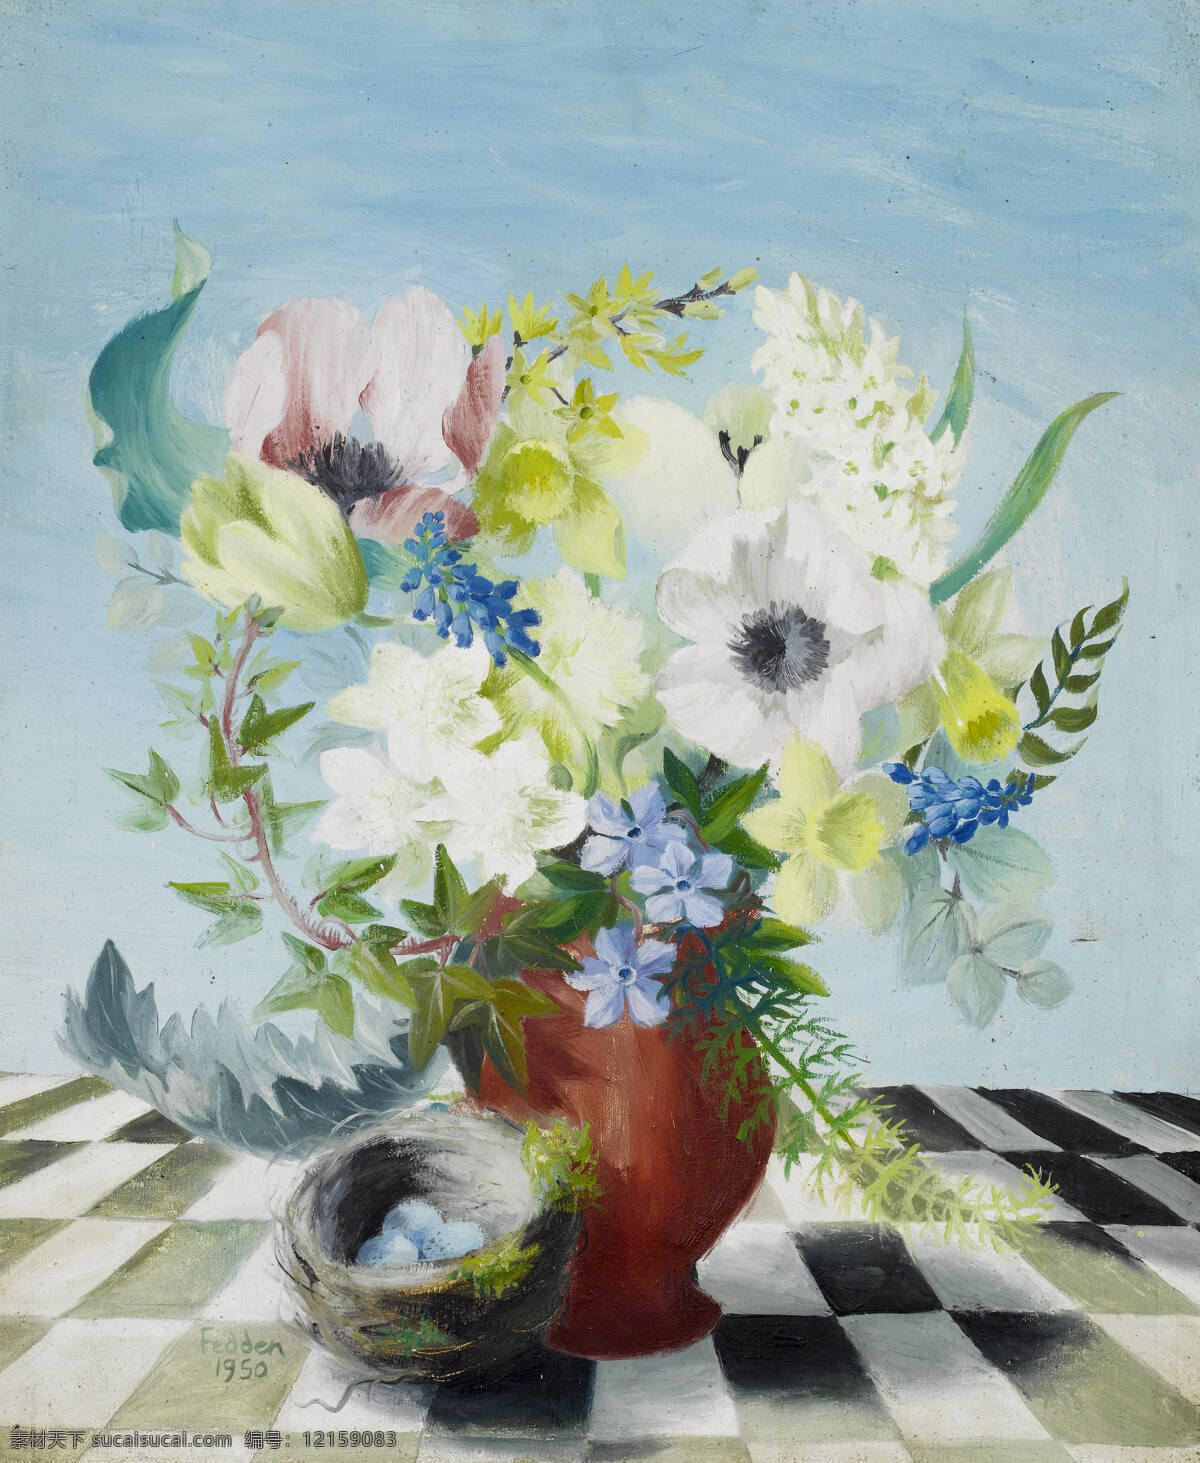 静物鲜花 玛丽 费登 女士 作品 混搭鲜花 鸟蛋 黑格子桌布 20世纪油画 油画 绘画书法 文化艺术